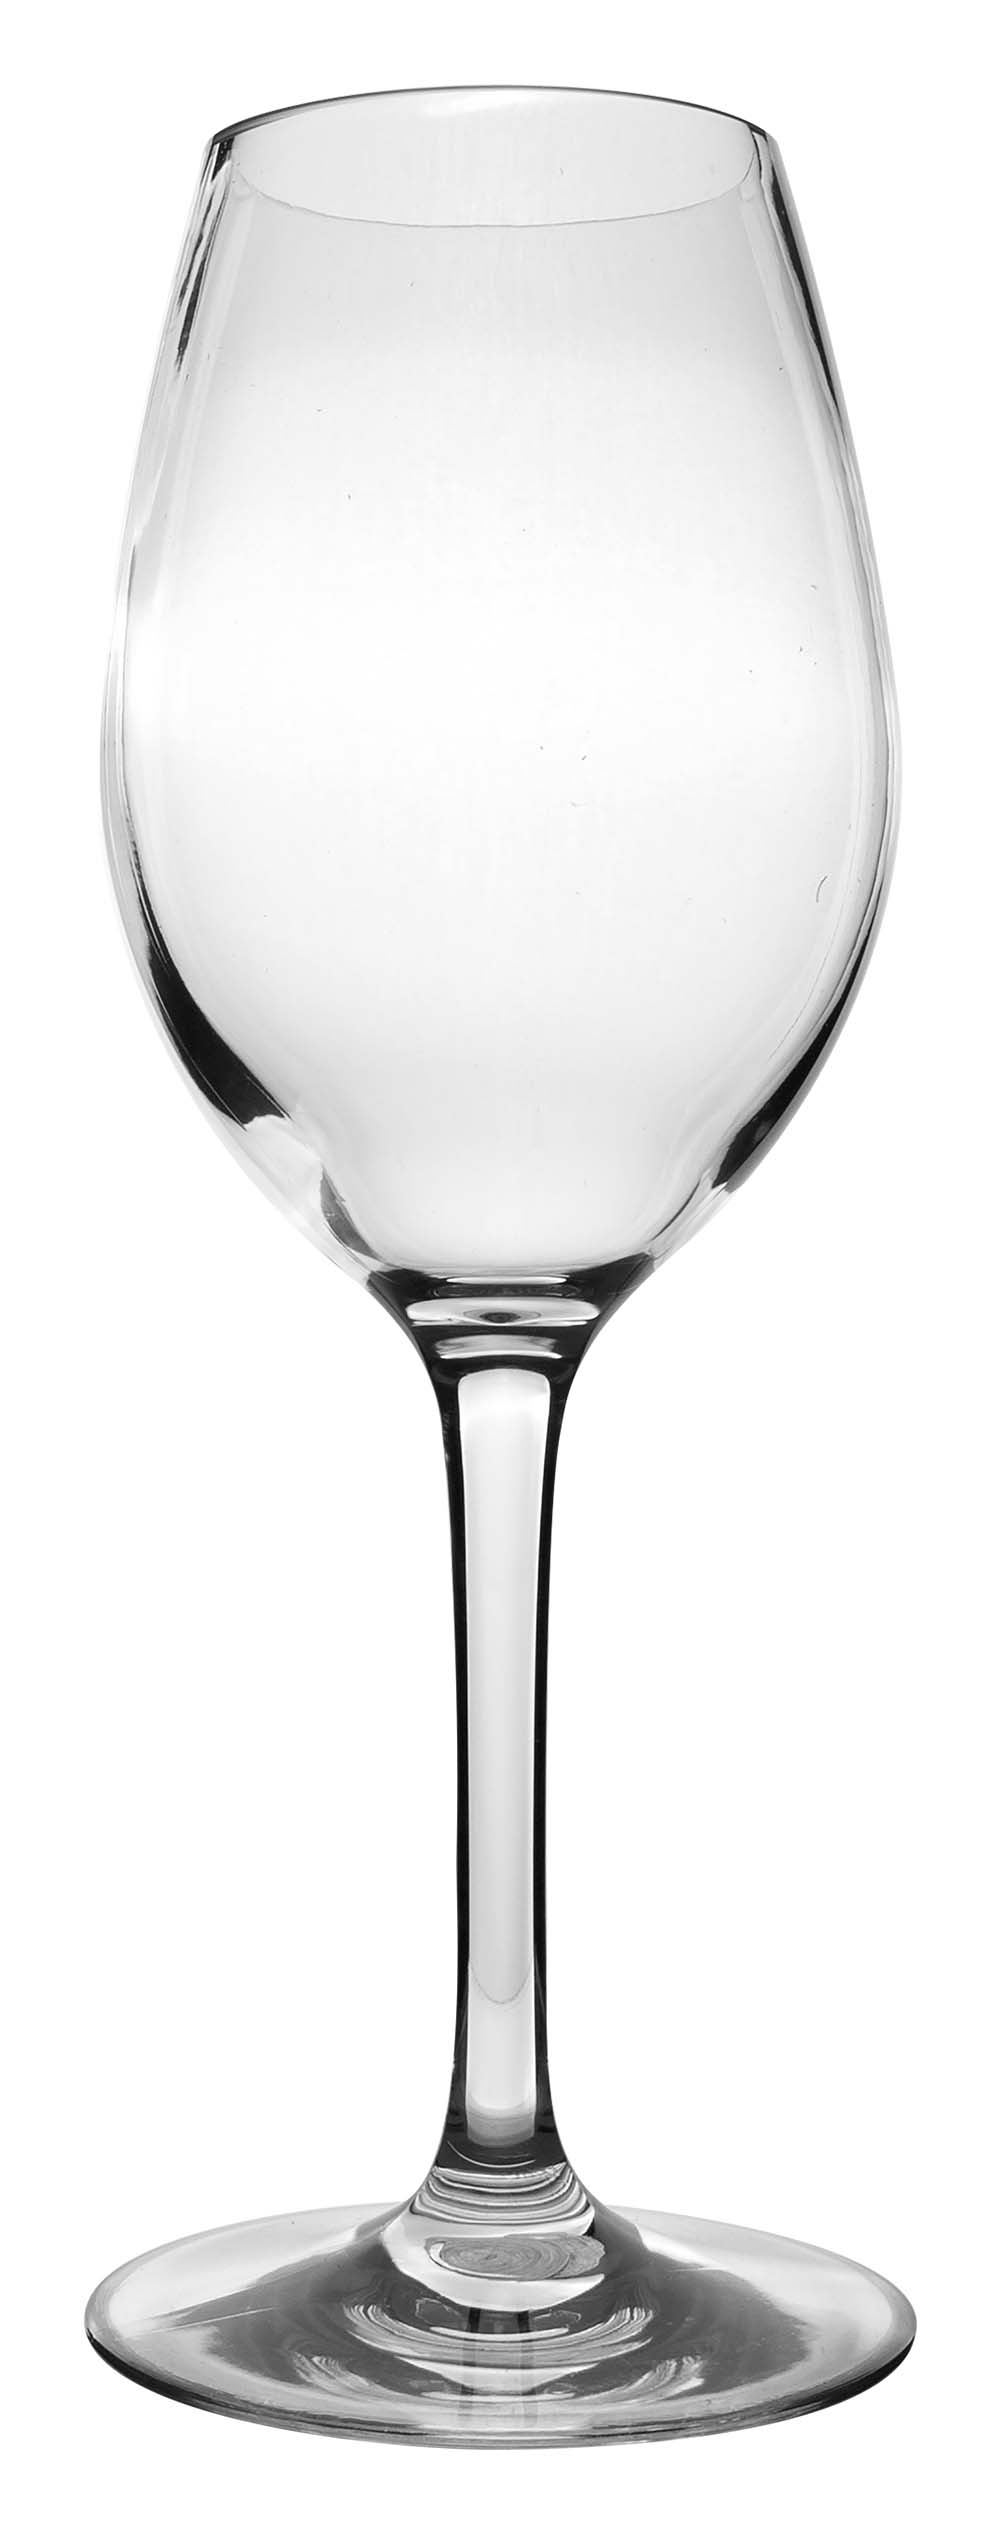 6101462 Een extra stevige en elegante set witte wijnglazen. Staan extra stabiel door de antislip siliconen ring in de voet. Gemaakt van sterk tritan. Hierdoor zijn deze glazen vrijwel onbreekbaar, lichtgewicht en kraswerend. Ook zijn deze glazen vaatwasmachinebestendig. Per 2 stuks verpakt.